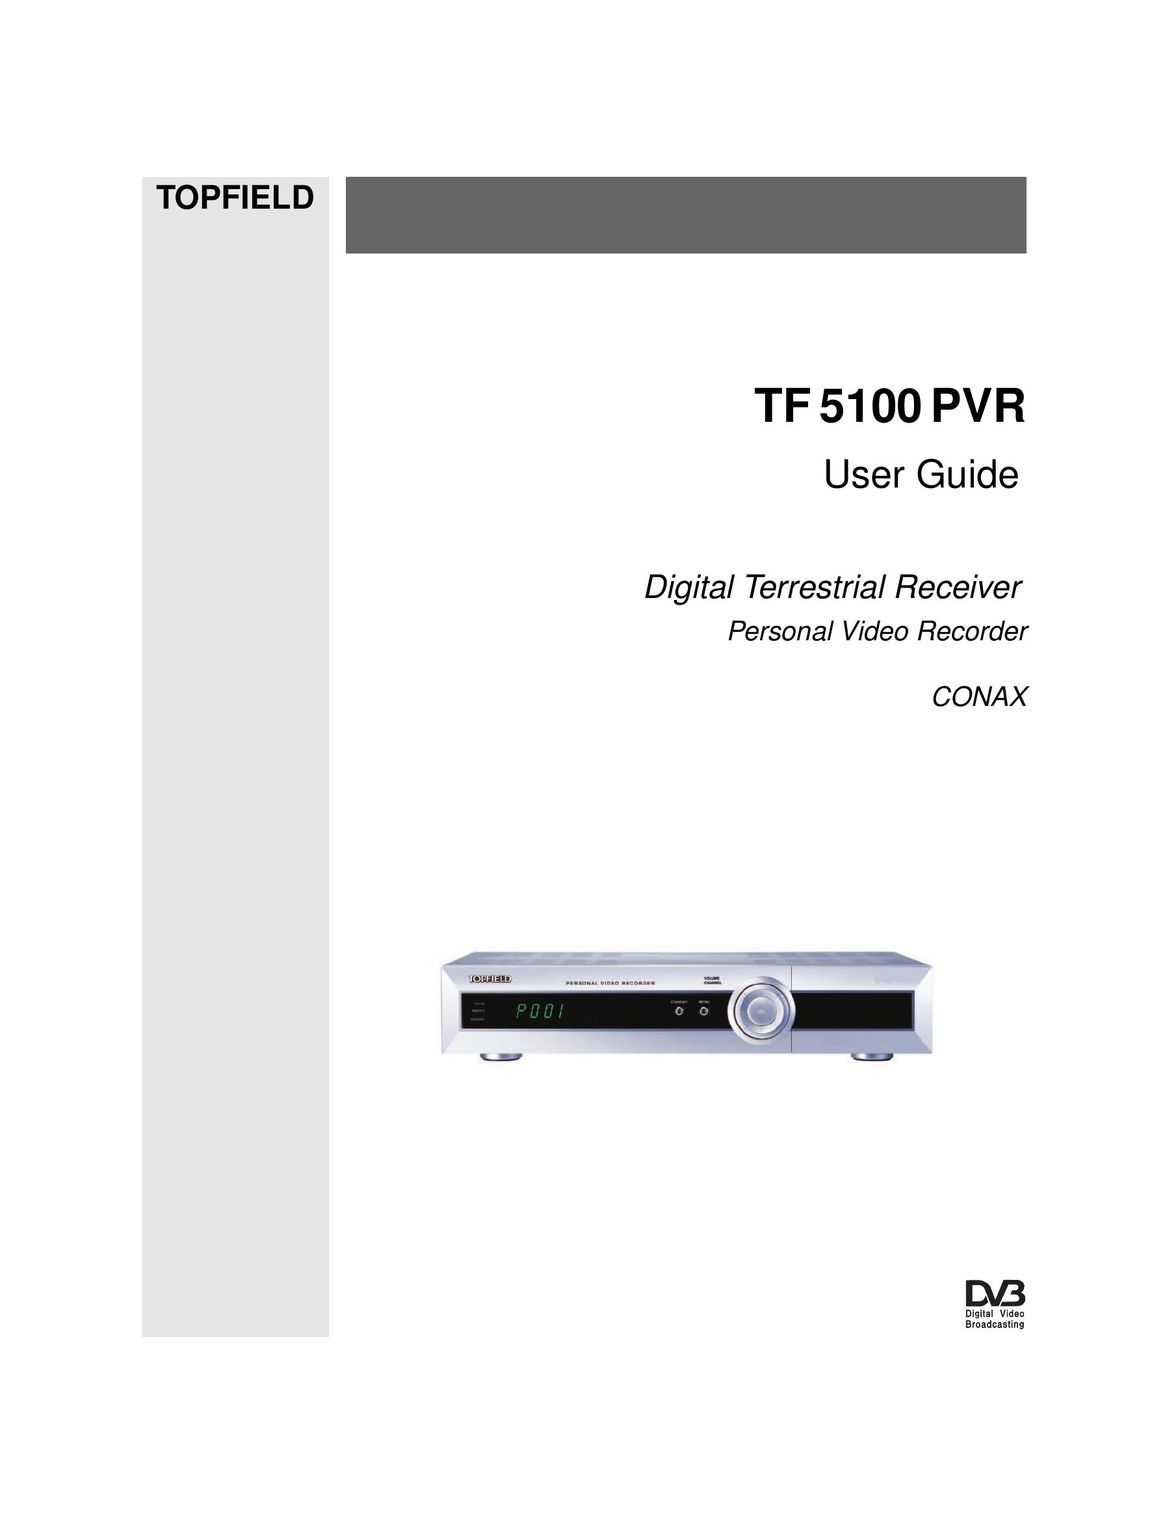 Topfield TF 5100 PVR DVR User Manual